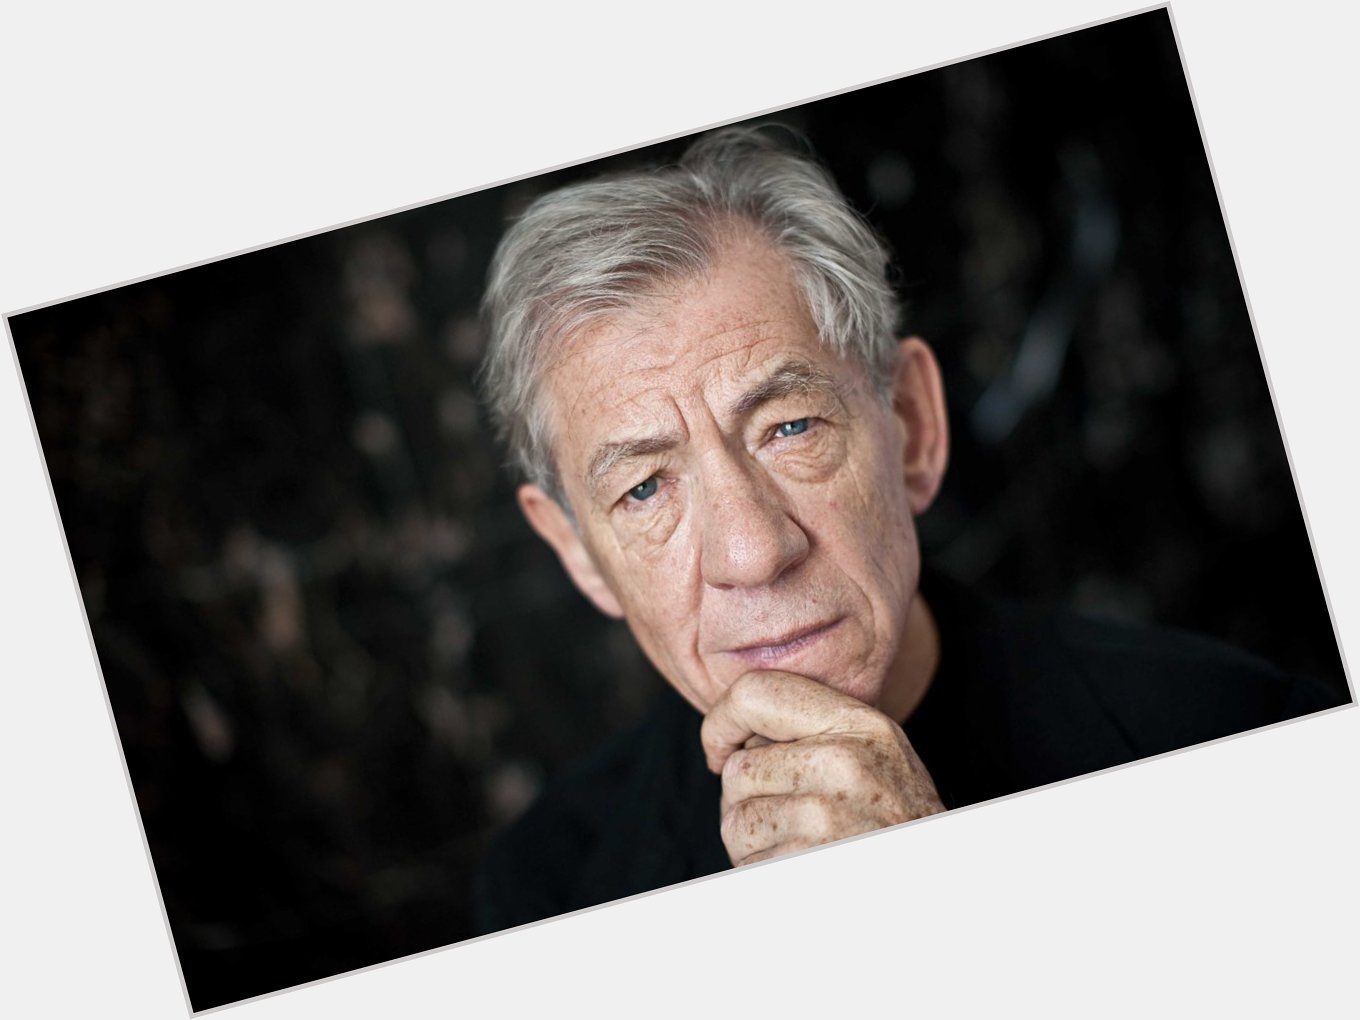 El grandísimo Sir Ian McKellen cumple hoy 78 años ¡Muchas, muchísimas felicidades!
Happy birthday 